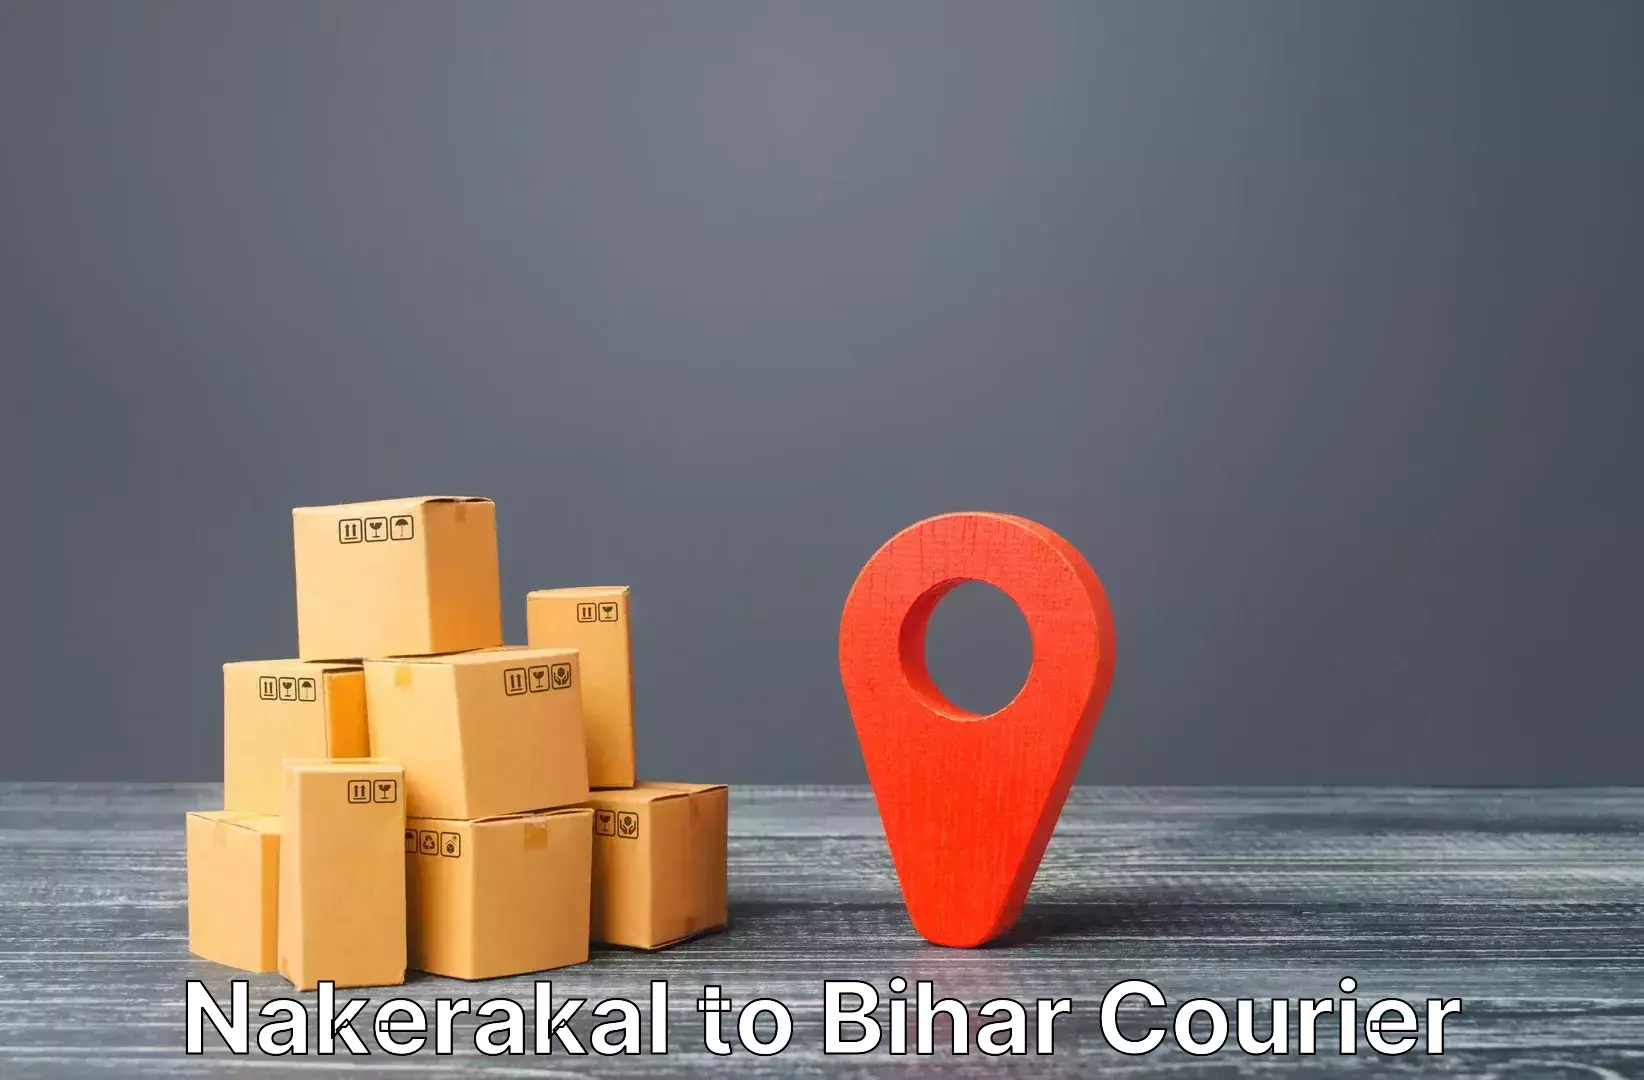 Baggage delivery management Nakerakal to Deo Aurangabad